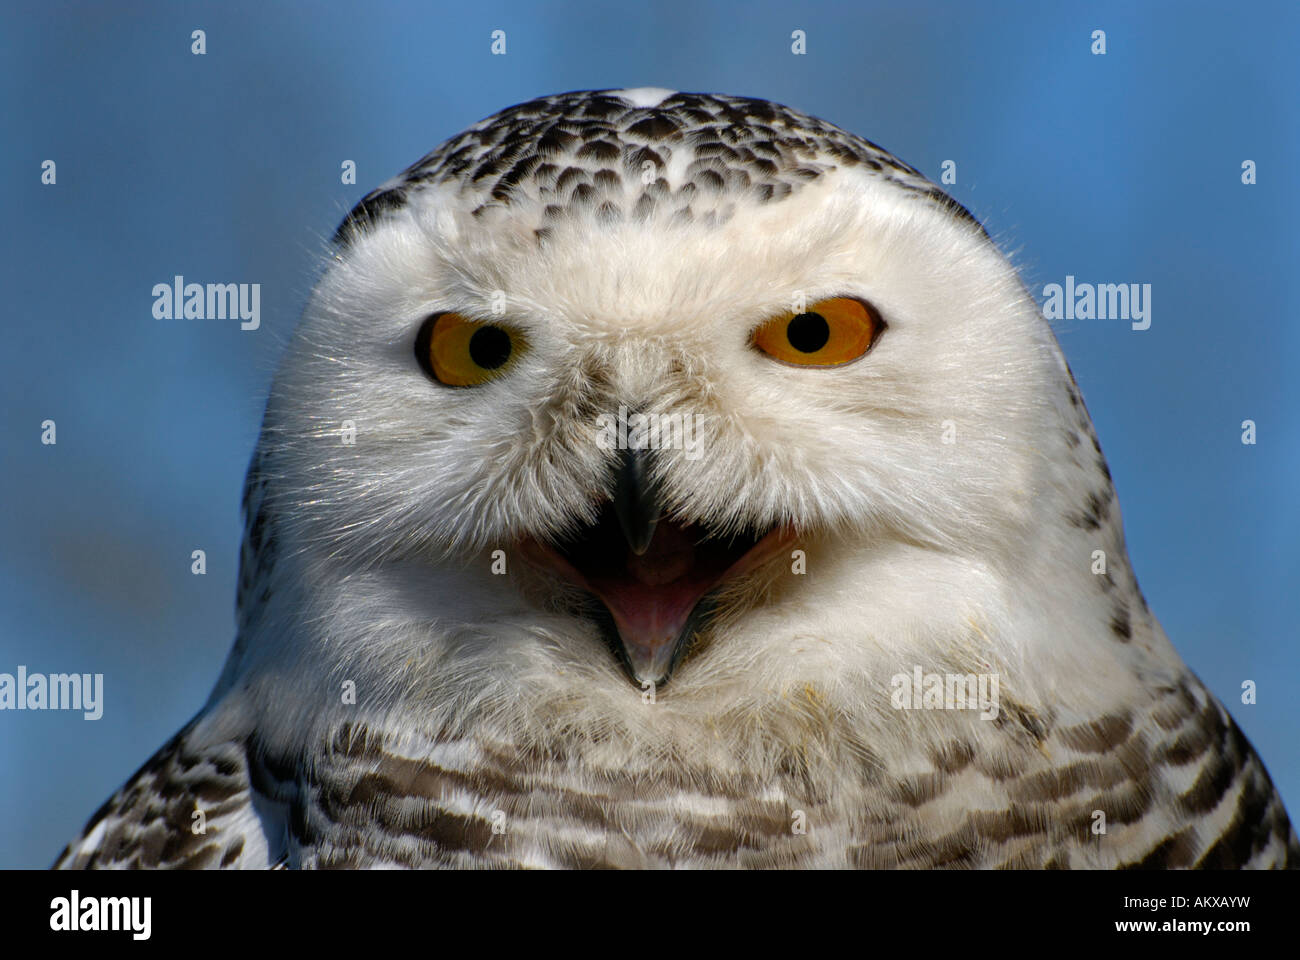 Snowy Owl (Bubo scandiacus), portrait Stock Photo